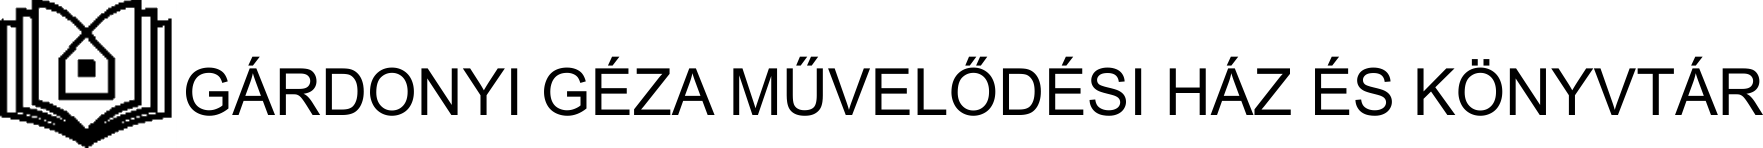 Gárdonyi Géza Művelődési Ház logo